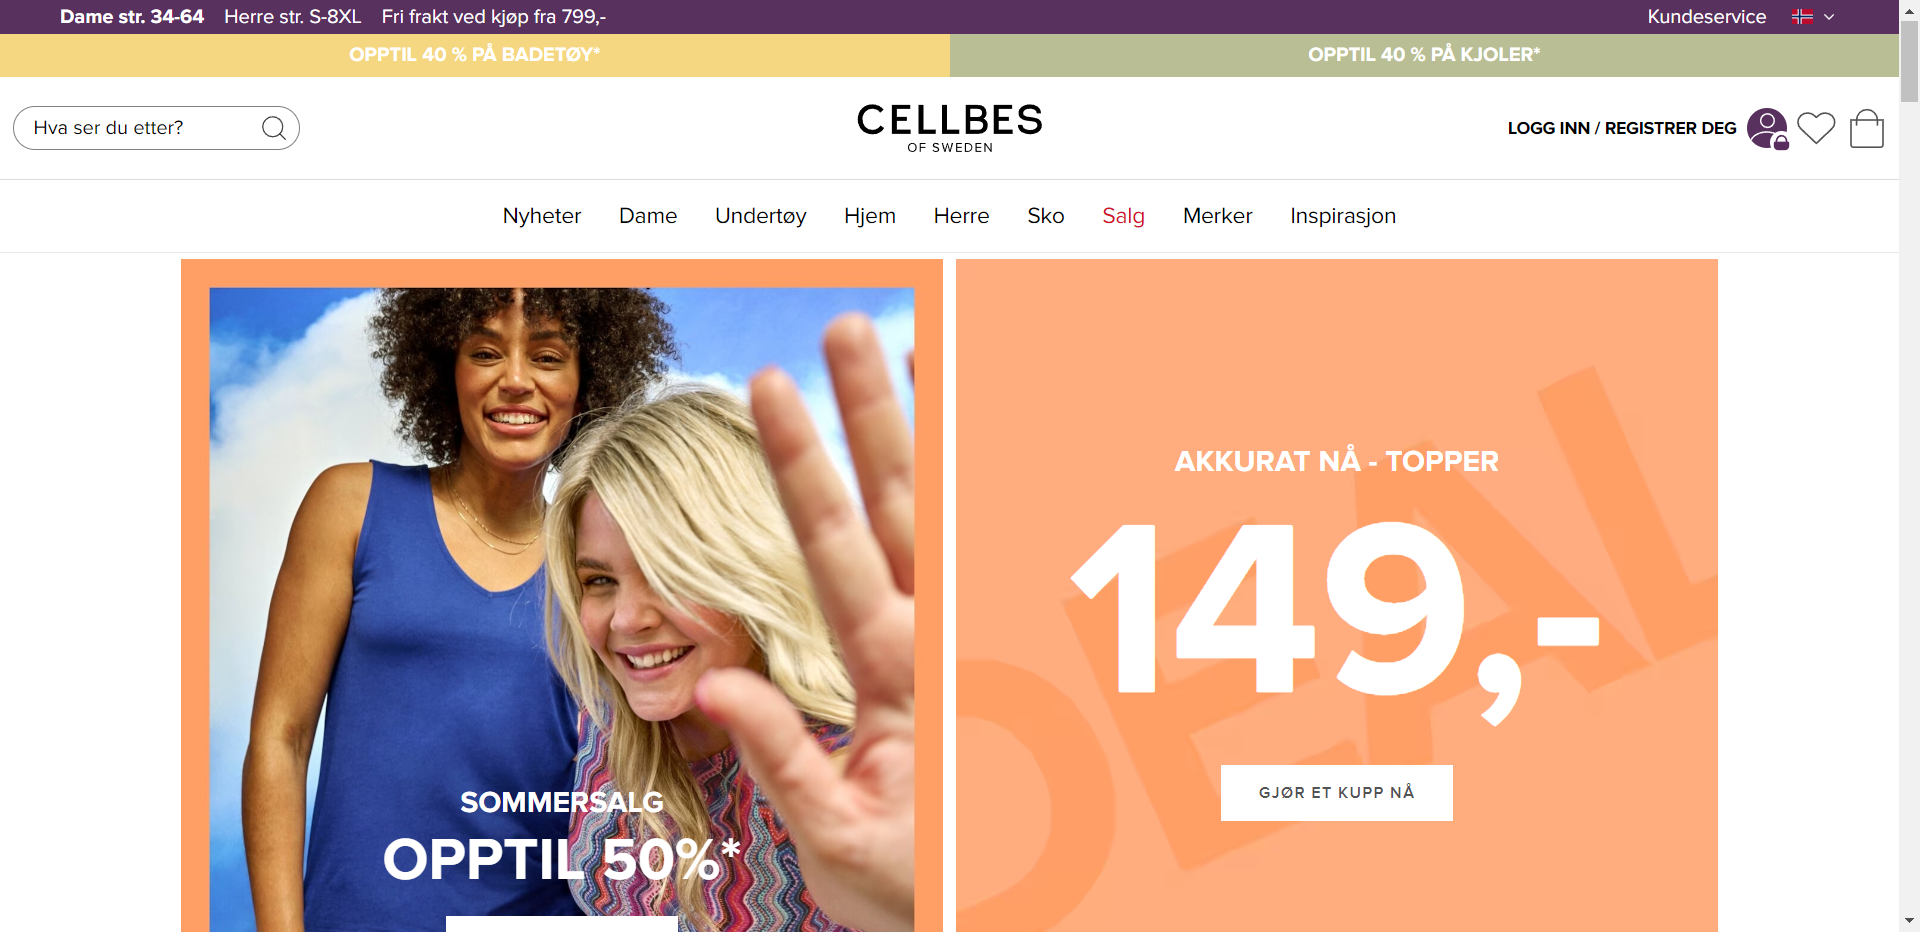 Cellbes nettbutikk - Les omtalen av nettbutikken